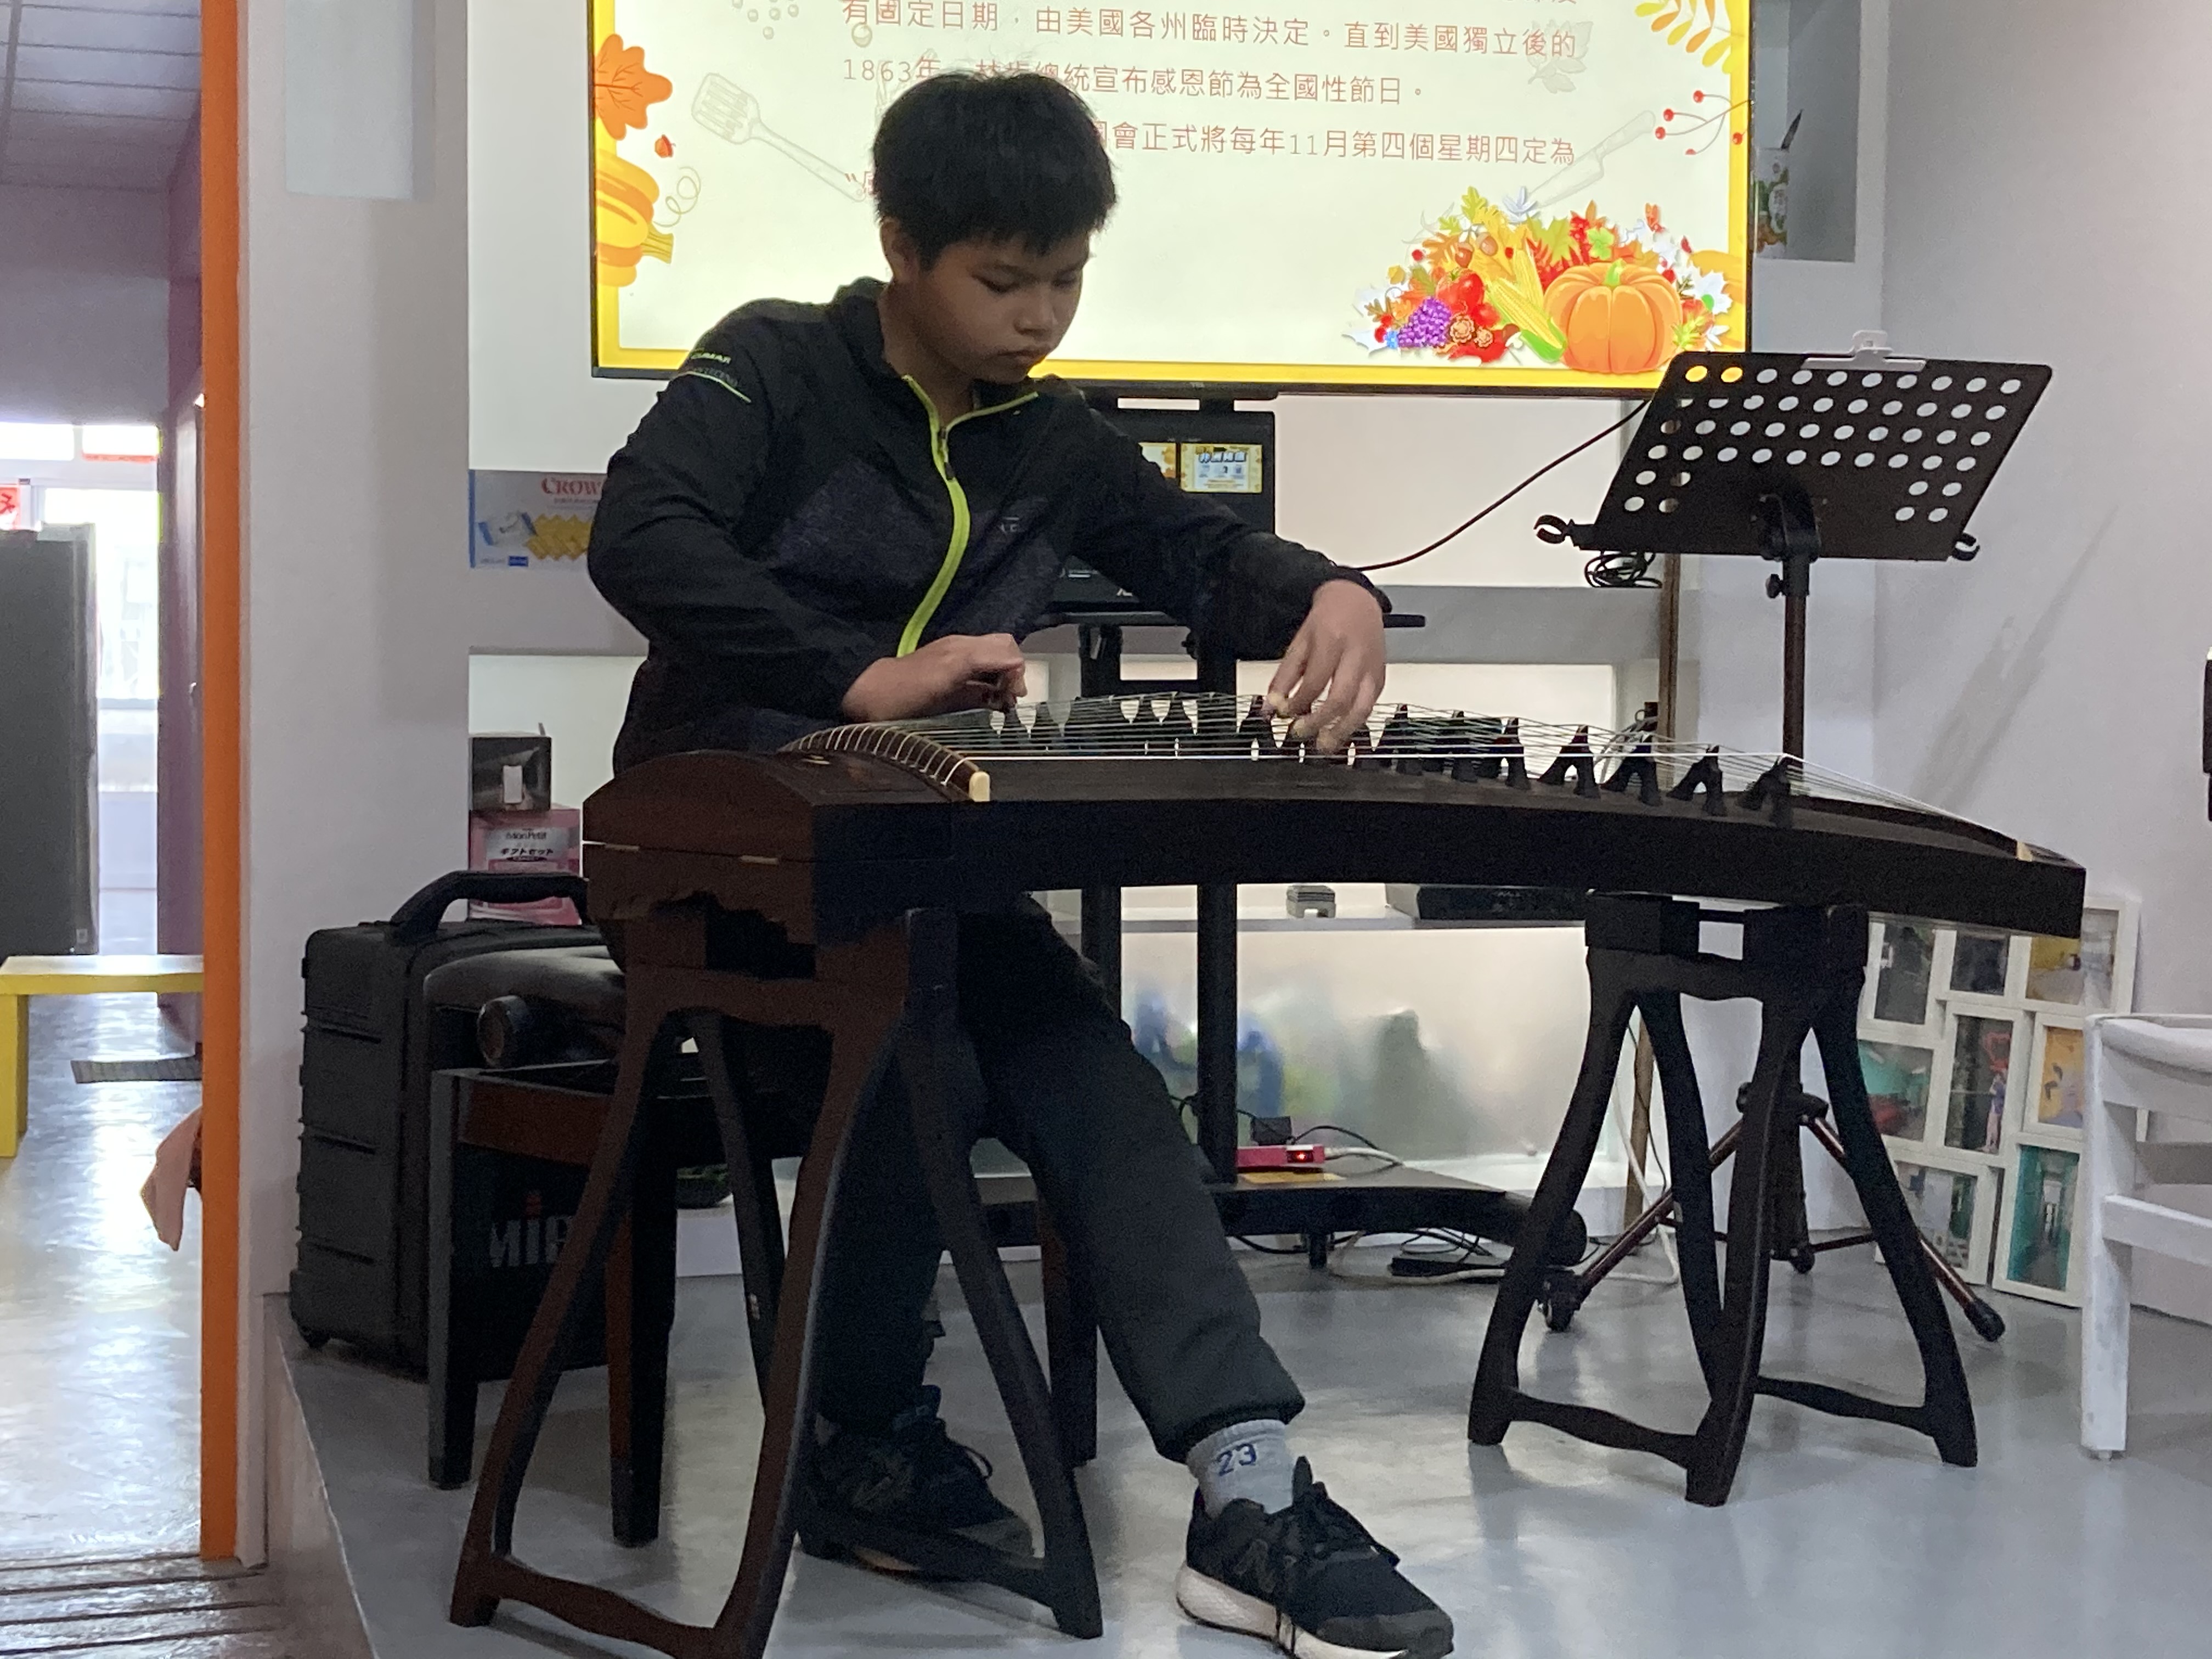 Kegiatan tersebut dimeriahkan oleh penampilan konser dari putra putri penduduk baru yang memainkan alat musik. Sumber: Cabang Kedua Kantor Layanan Imigrasi Taichung